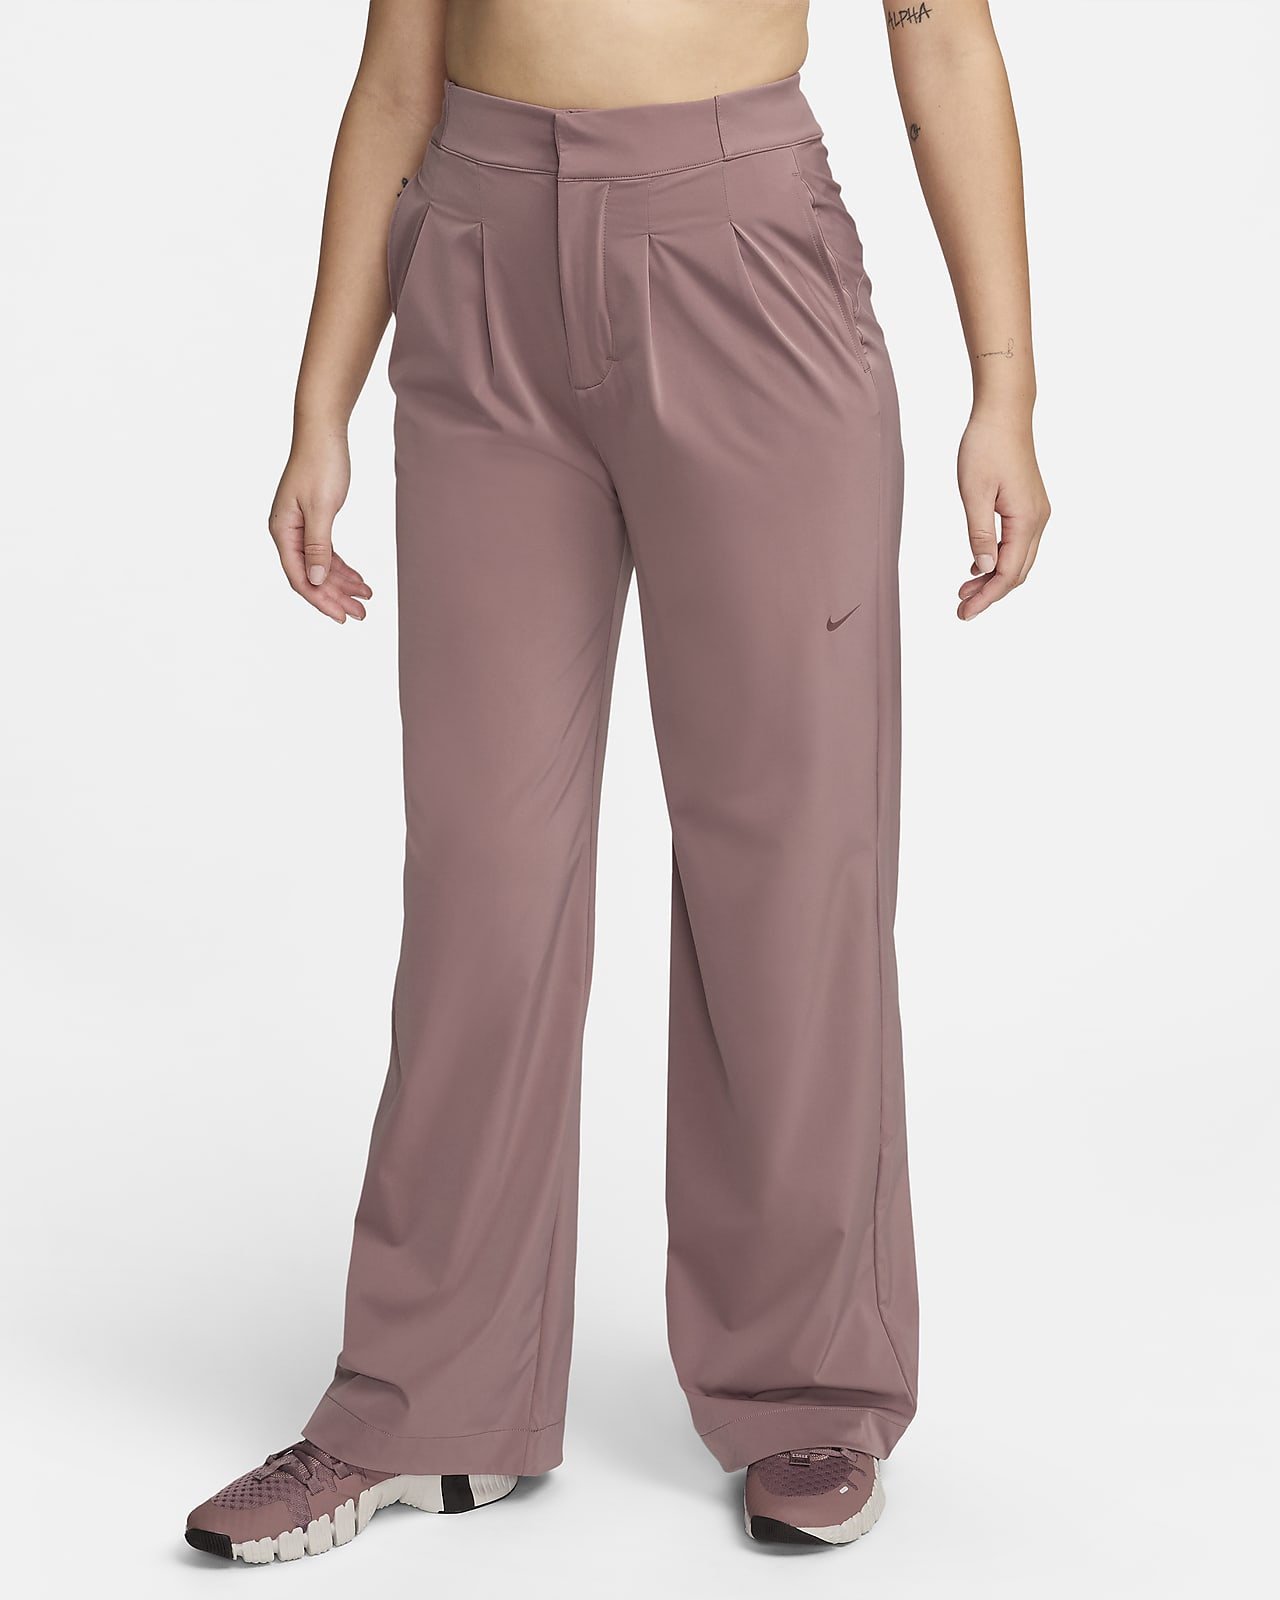 Nike Dri Fit Women's Capri Pants Size M Black Pink stripe